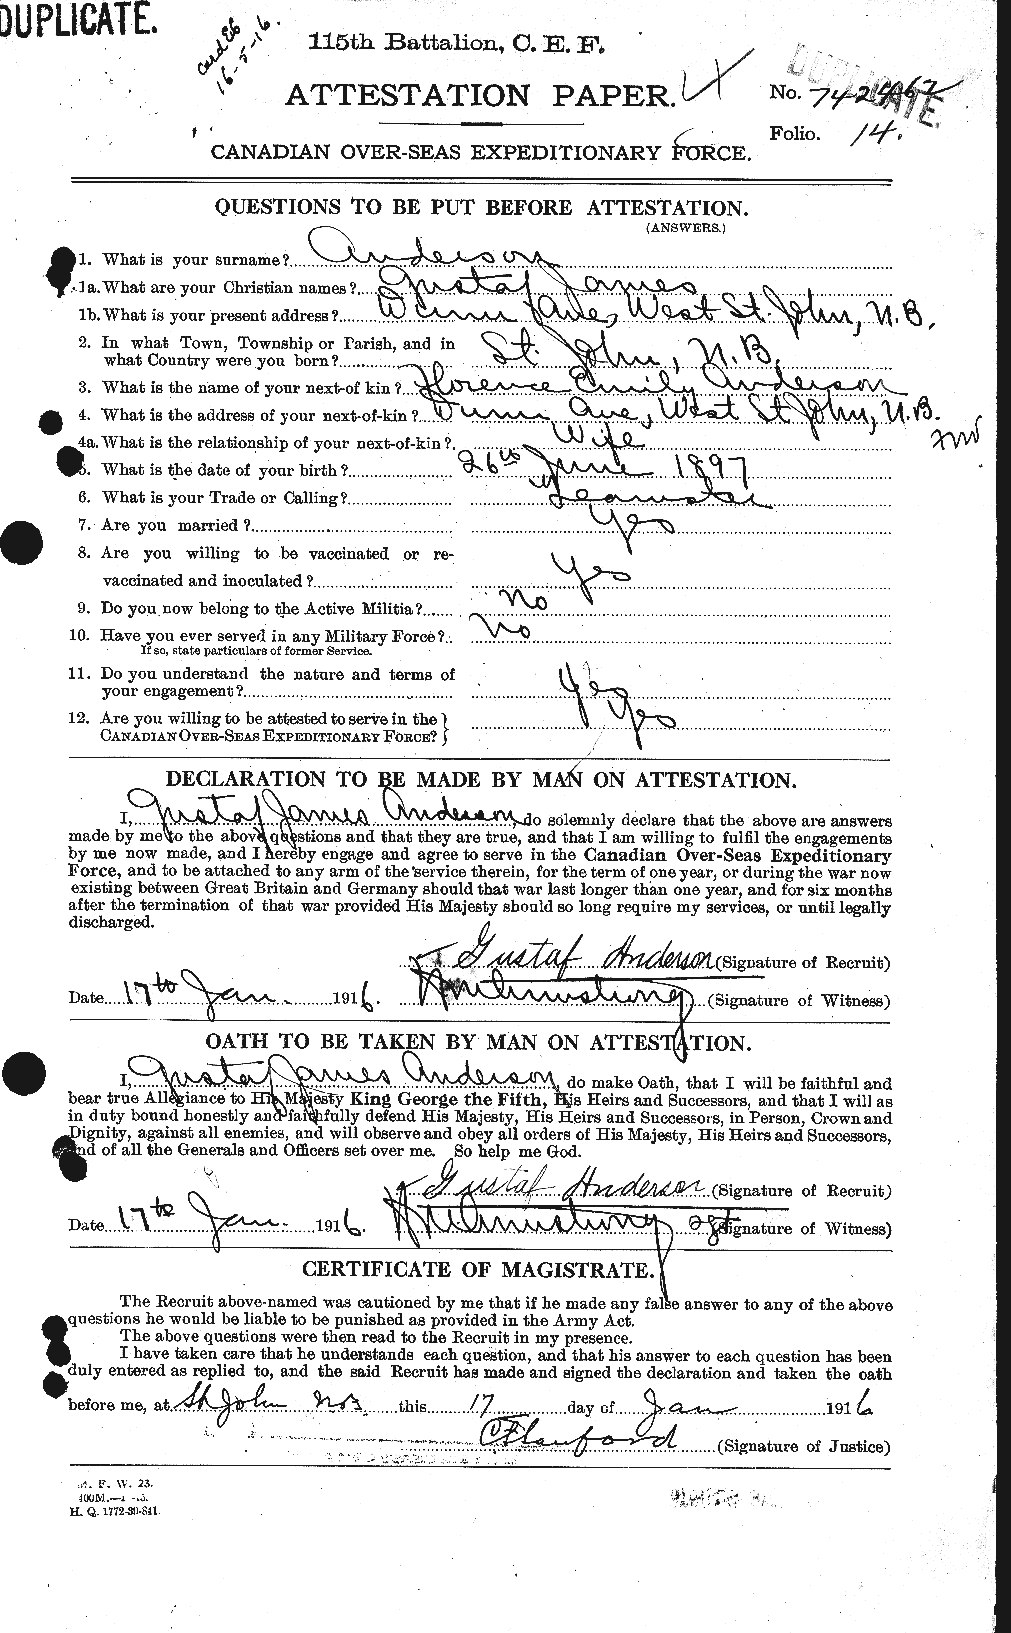 Dossiers du Personnel de la Première Guerre mondiale - CEC 209648a